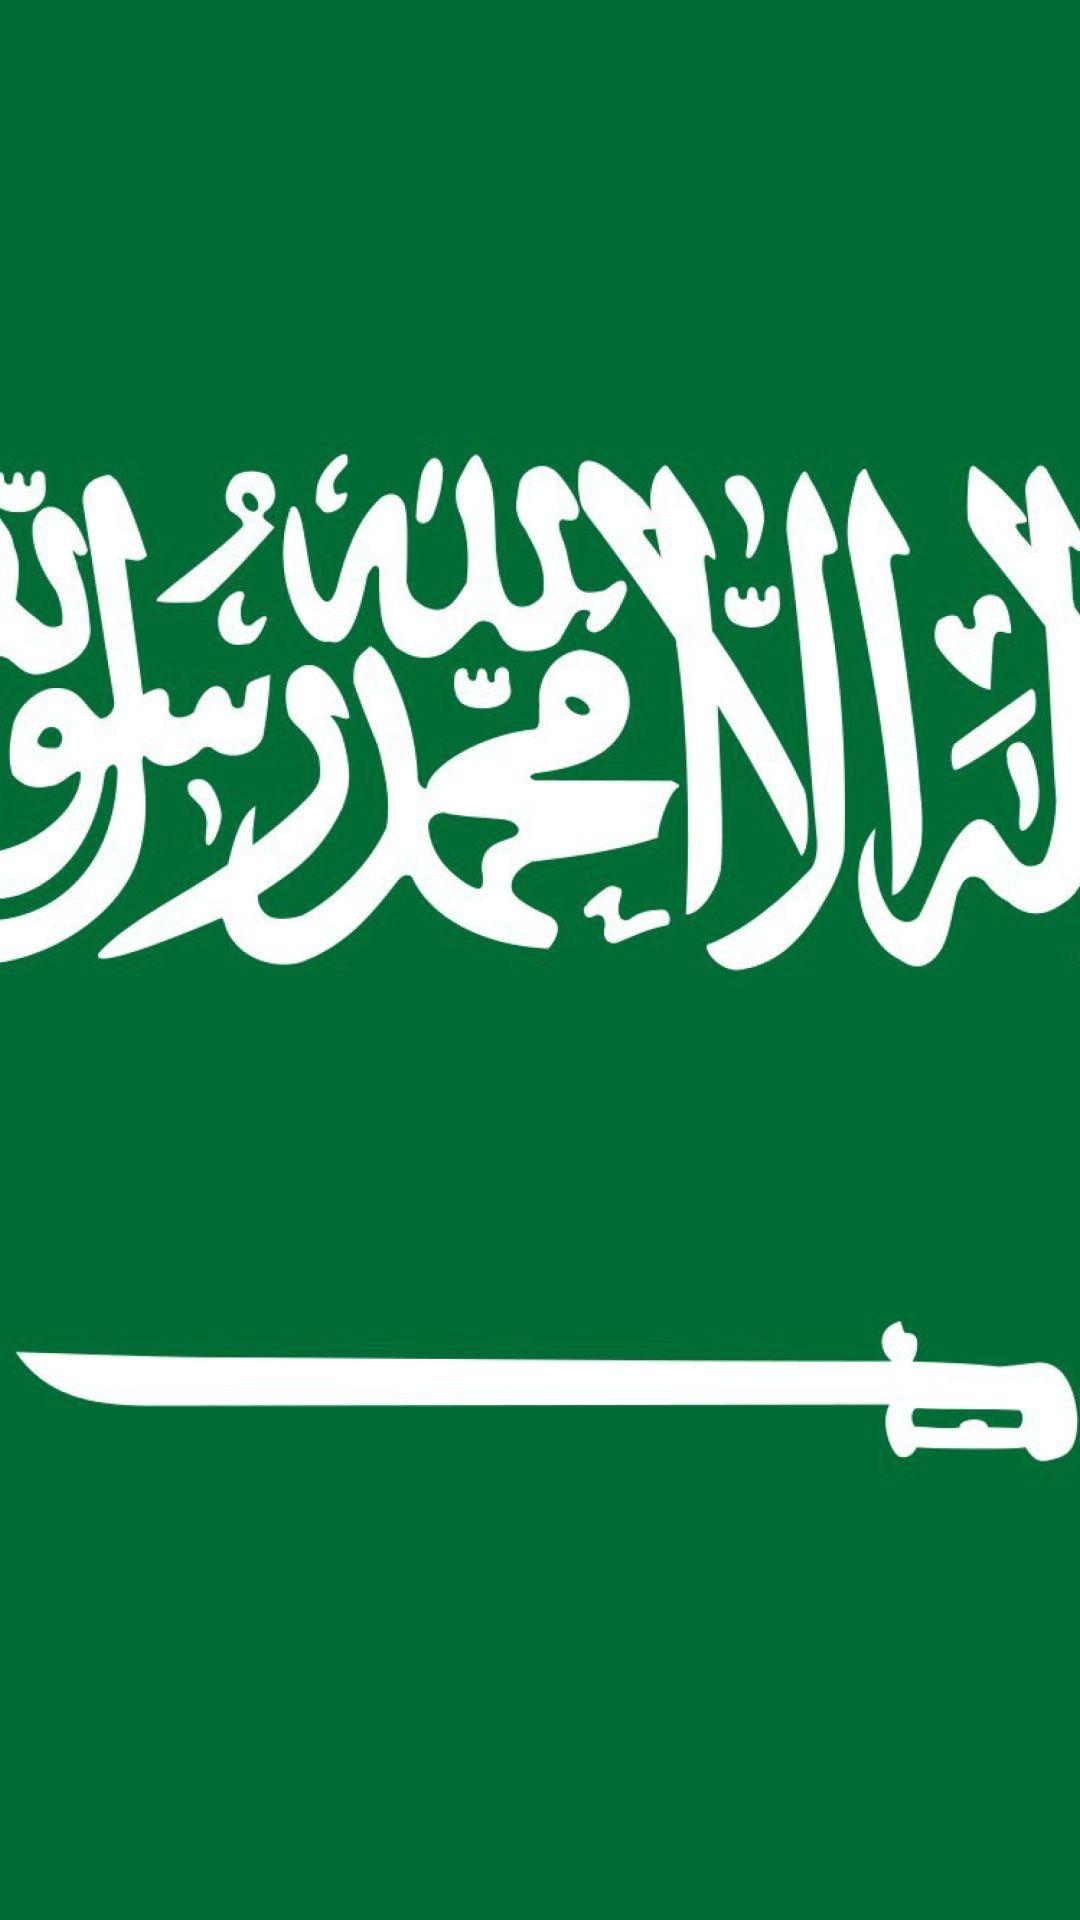 Flag saudi arabia iphone wallpaper